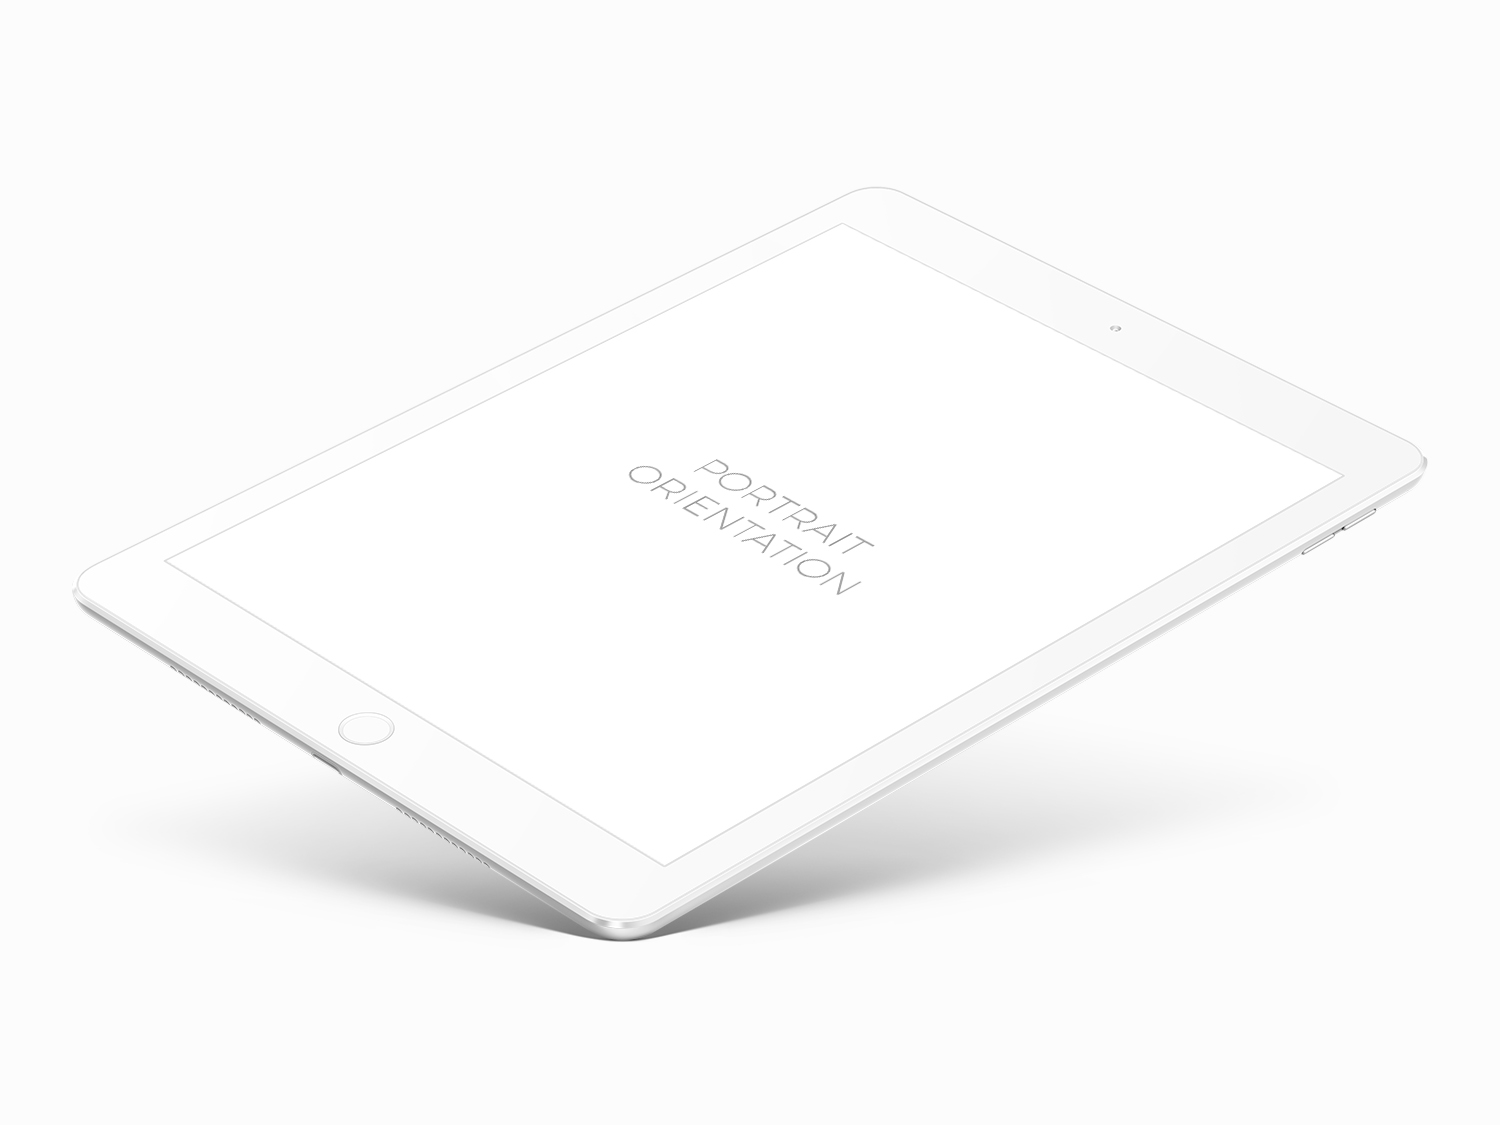 White iPad Mockup